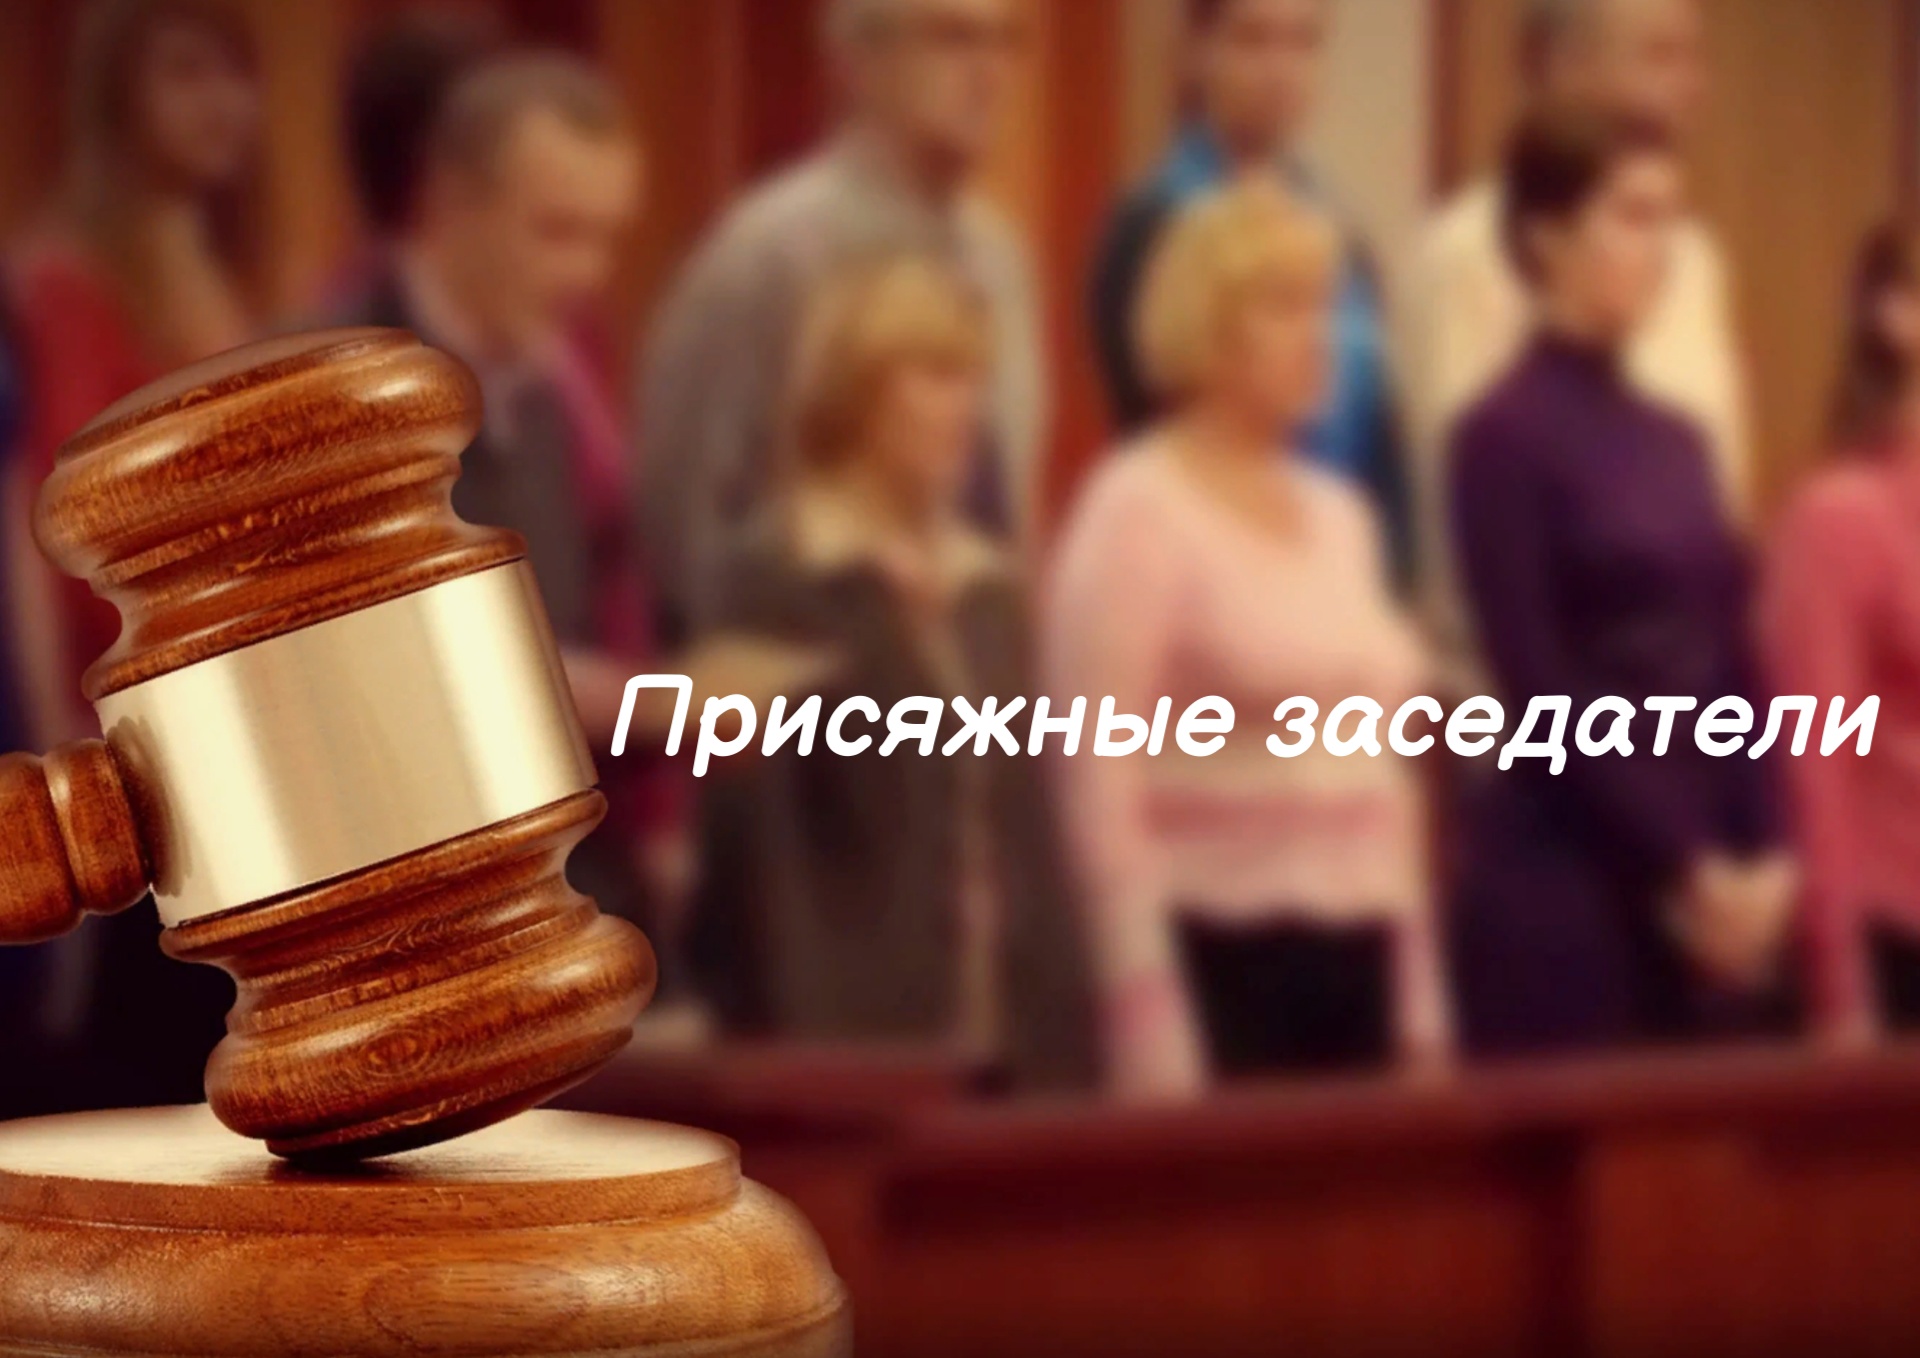 В Беломорске ищут присяжных заседателей 